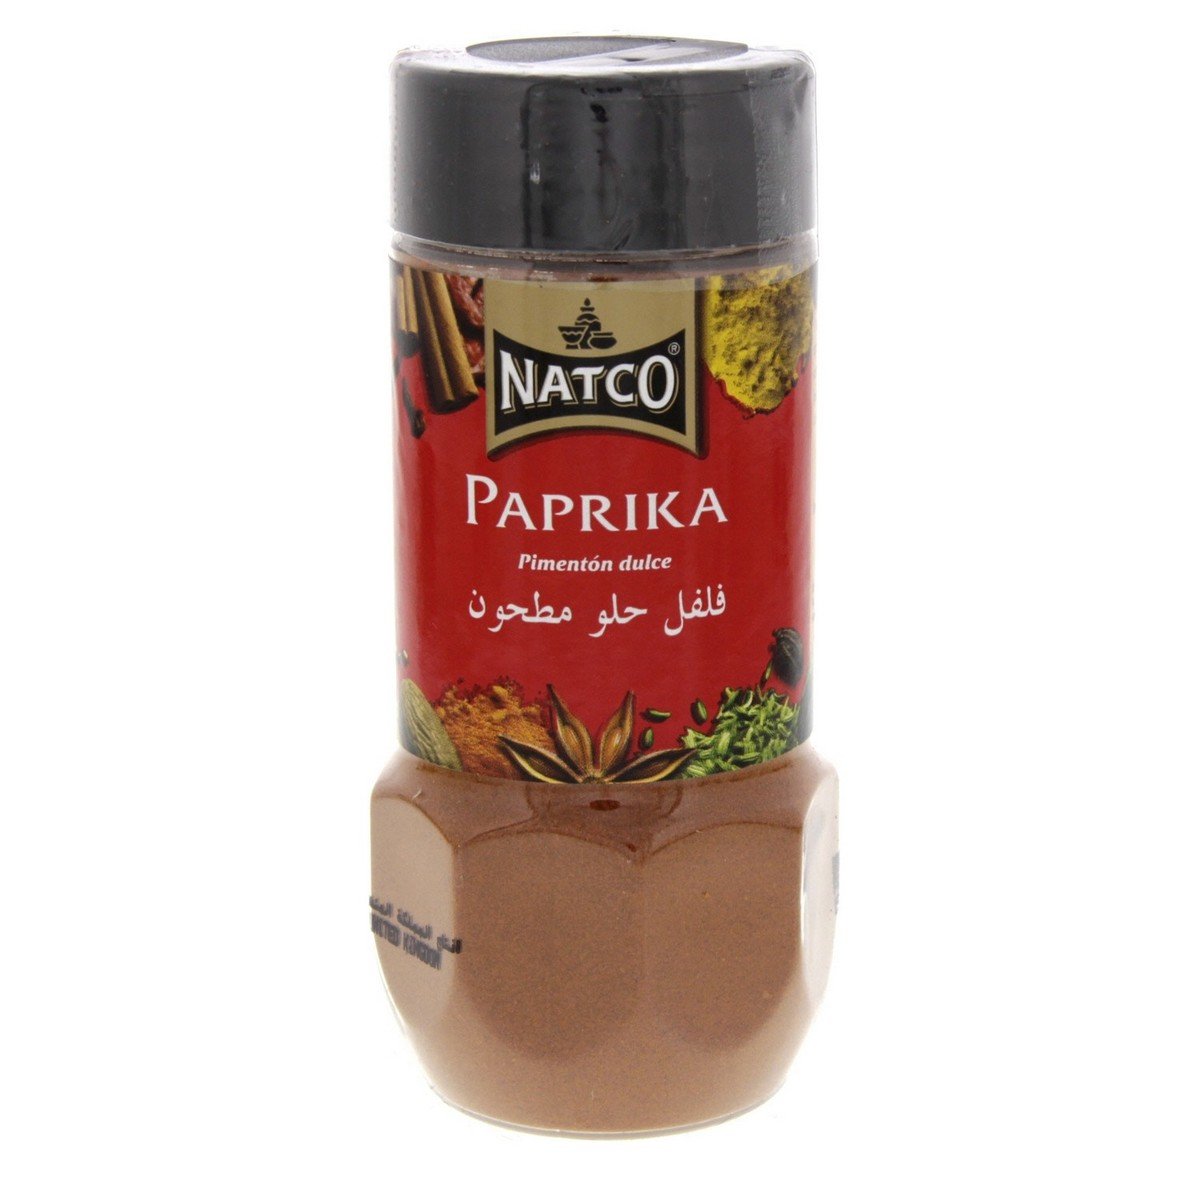 Natco Paprika Powder 100 g